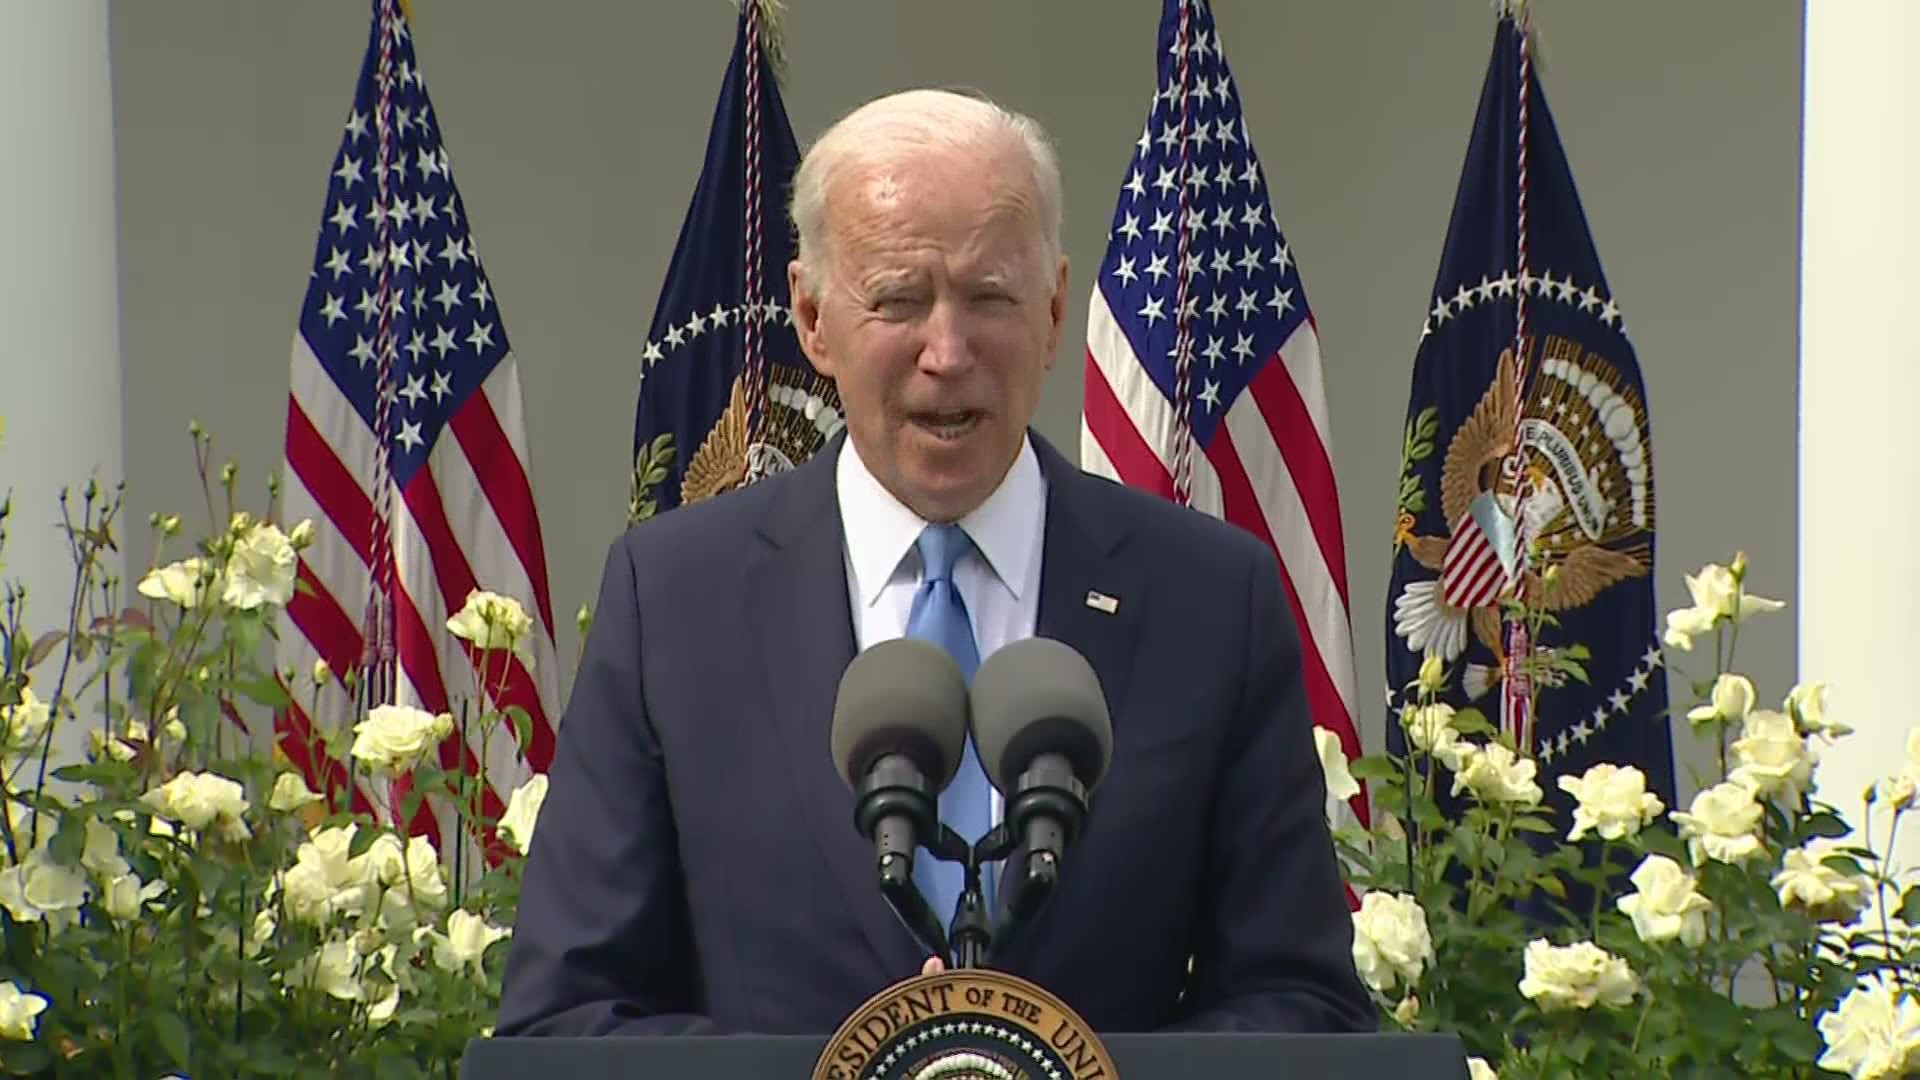 President Joe Biden spoke from the Rose Garden Thursday following the CDC's easing of masking indoors.